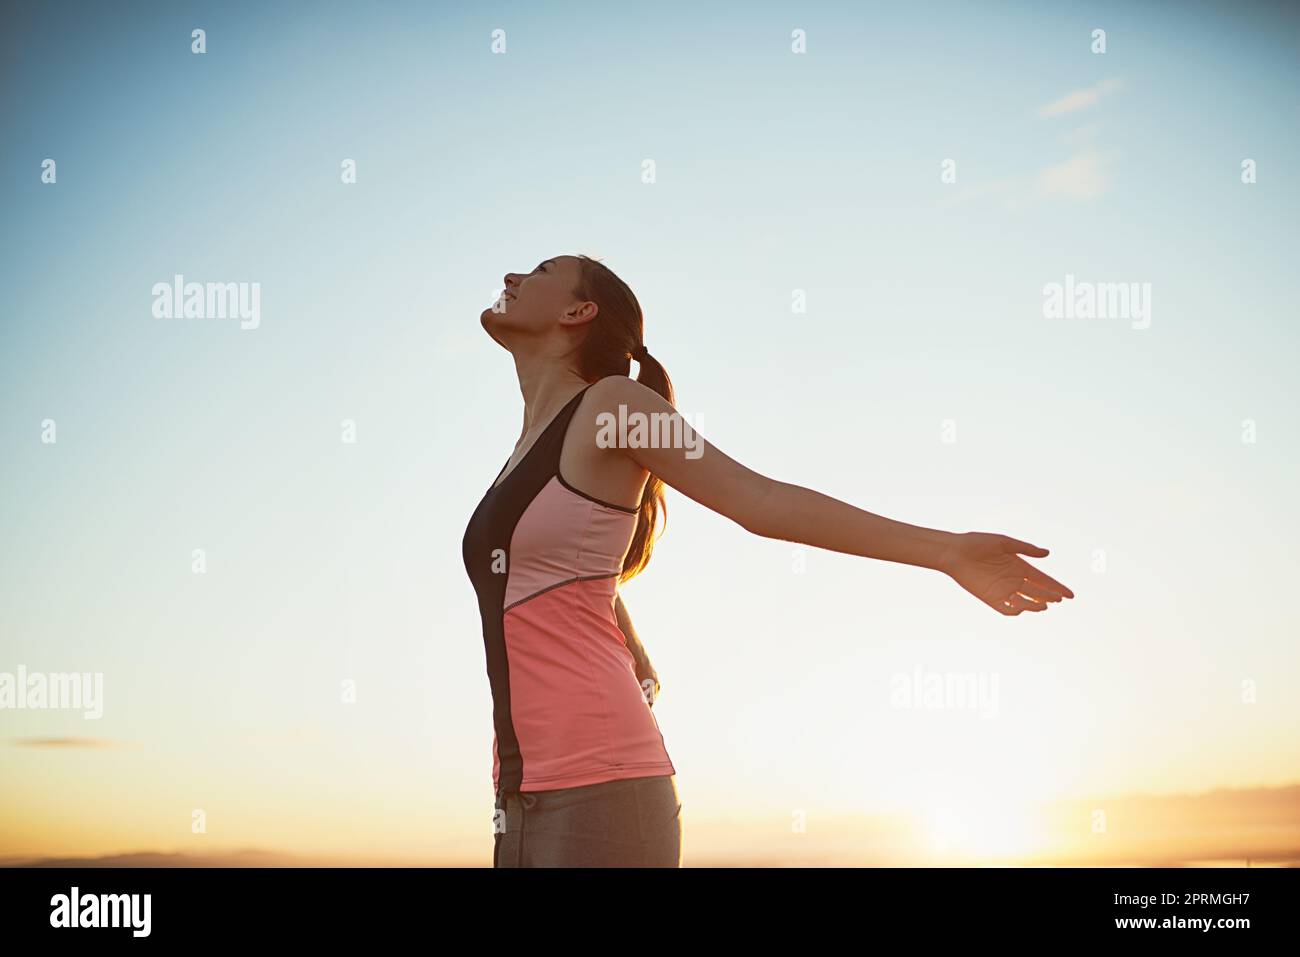 Eine sportliche junge Frau, die mit ausgestreckten Armen im Freien steht. Stockfoto